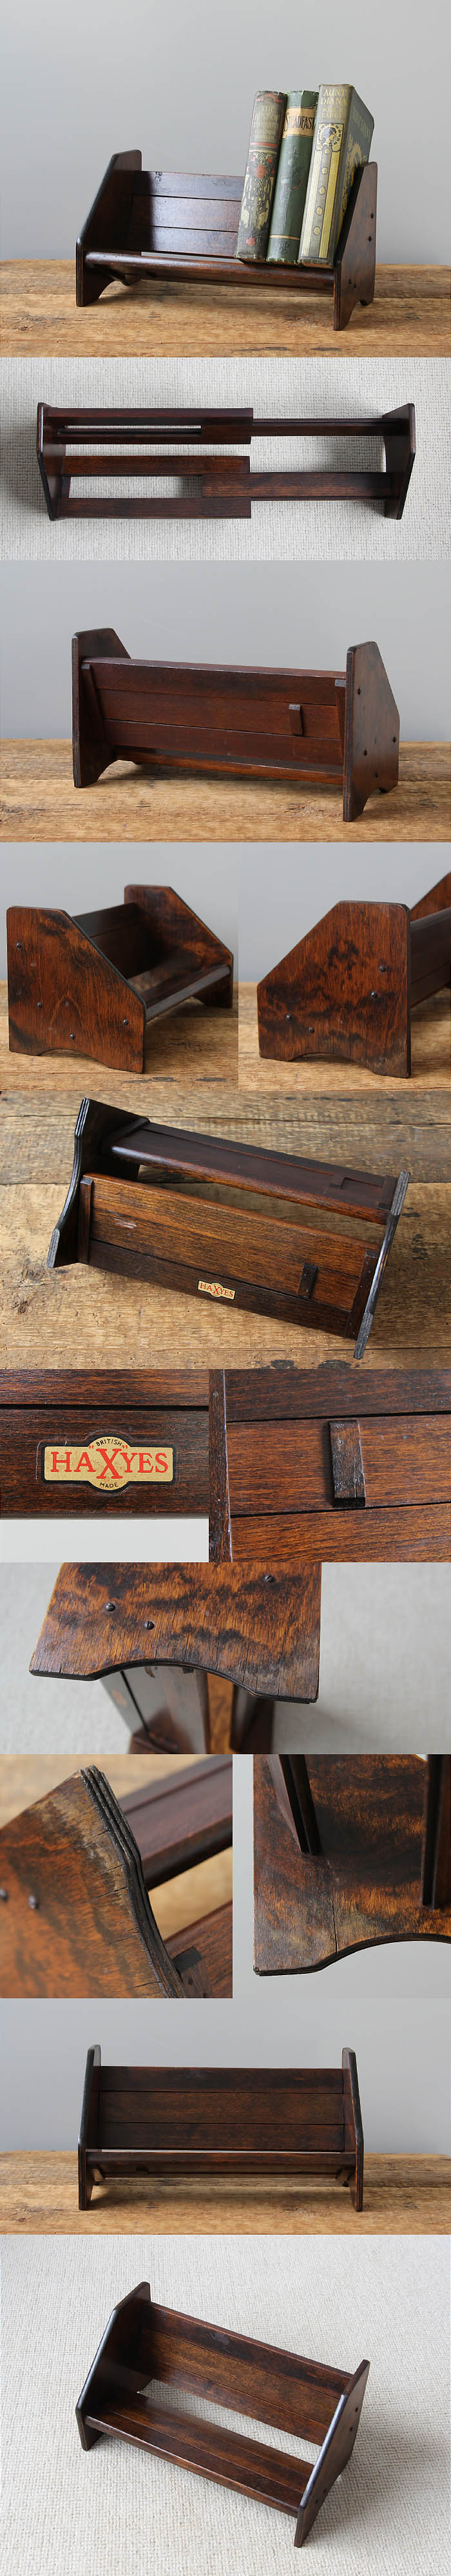 イギリス アンティーク ブックスタンド 本立て 伸長式 古木 インテリア雑貨「HAXYES」V-937